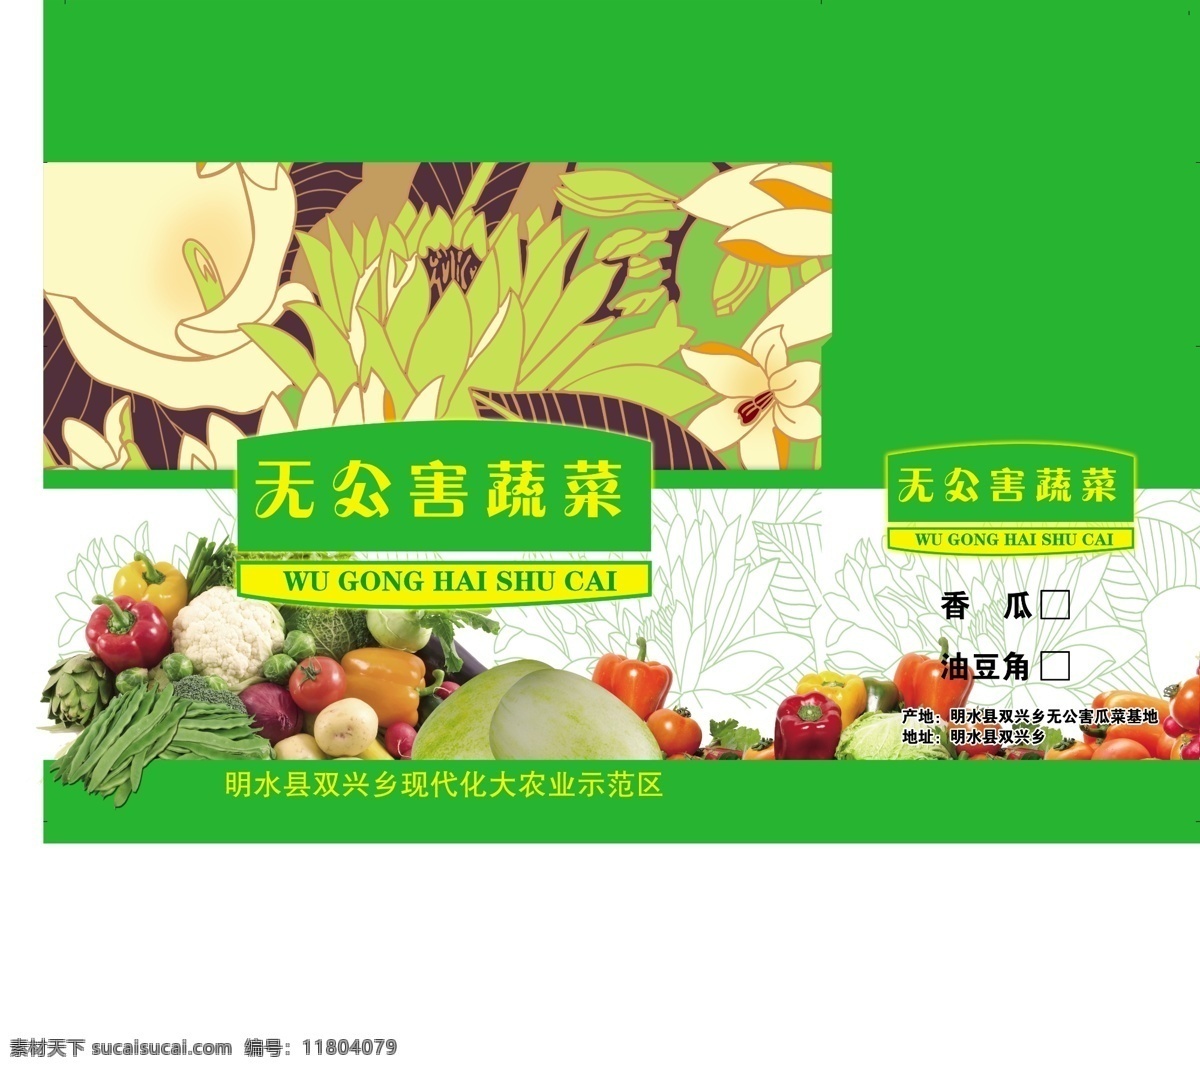 蔬菜 包装 包装设计 大花 广告设计模板 绿色 蔬菜包装 水果 平面图 礼箱 源文件 风景 生活 旅游餐饮